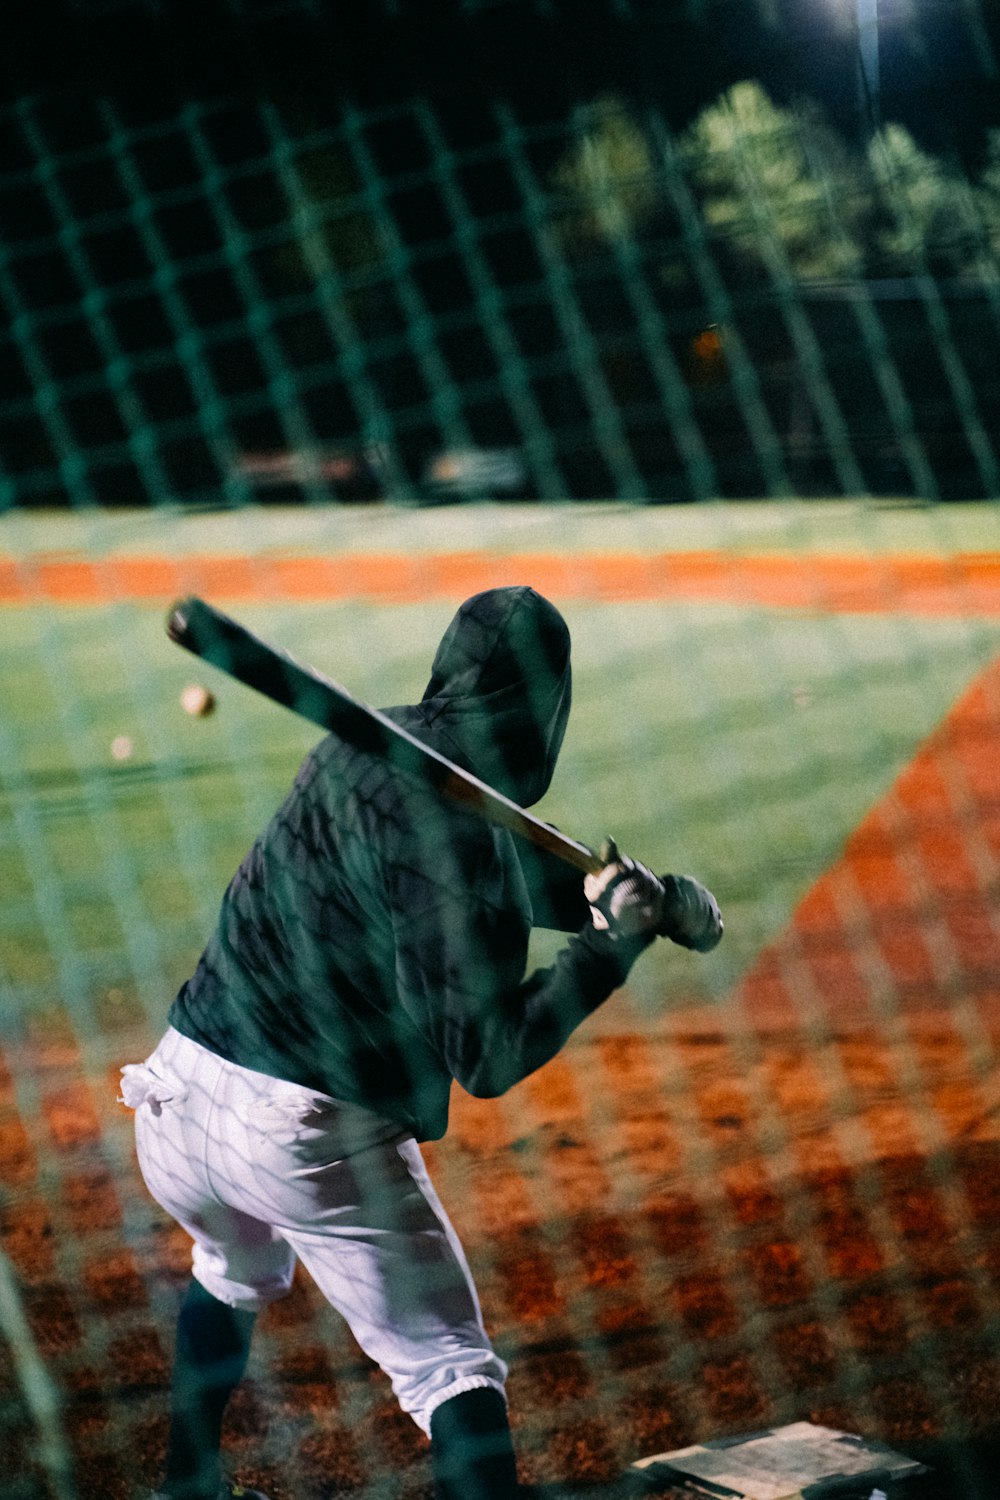 Un homme tenant une batte de baseball au sommet d’un terrain